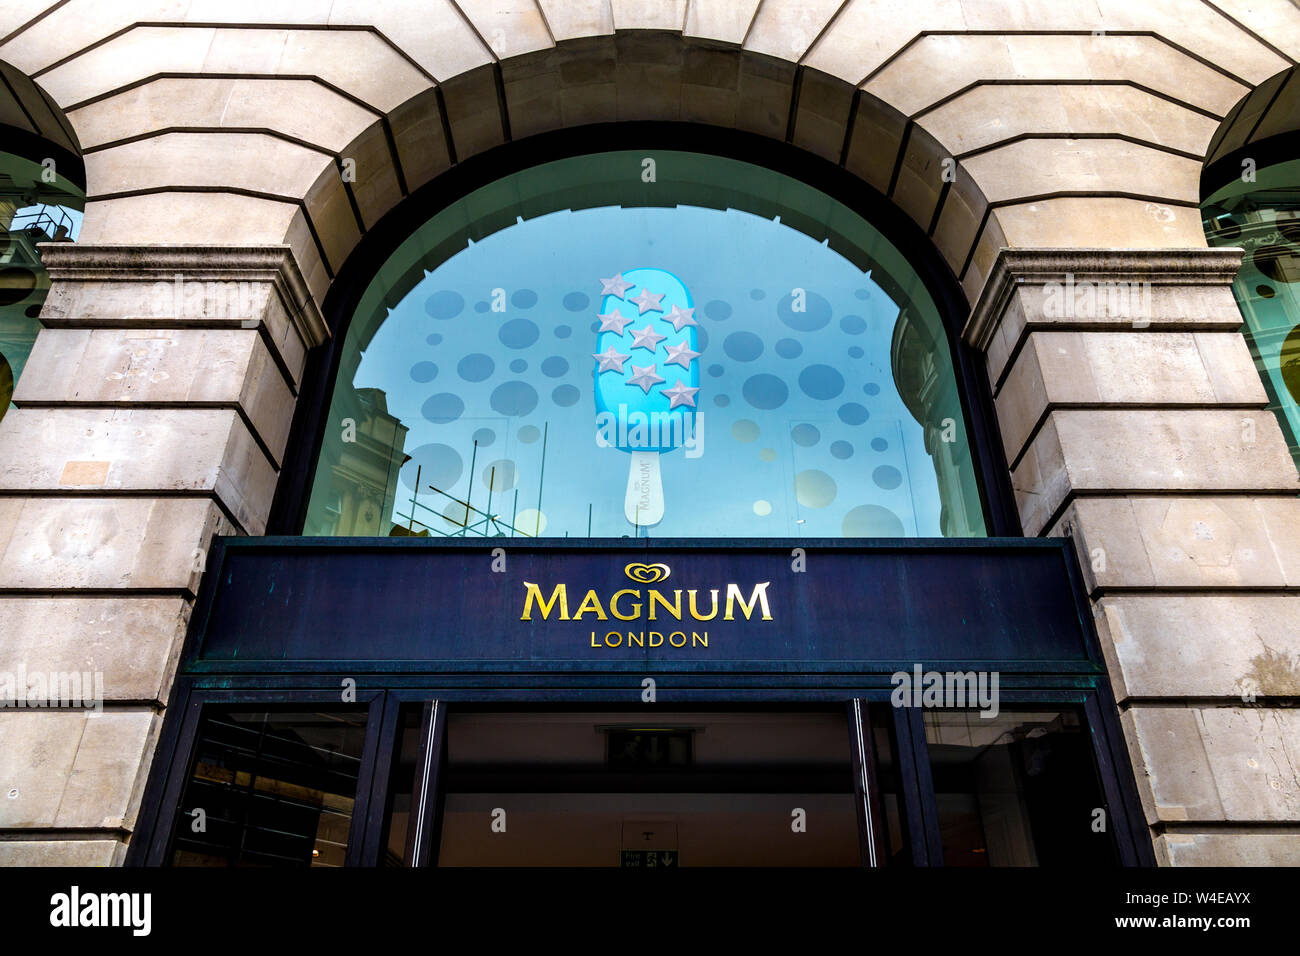 L'extérieur de la boutique plaisir Magnum dans Piccadilly, Londres, UK Banque D'Images